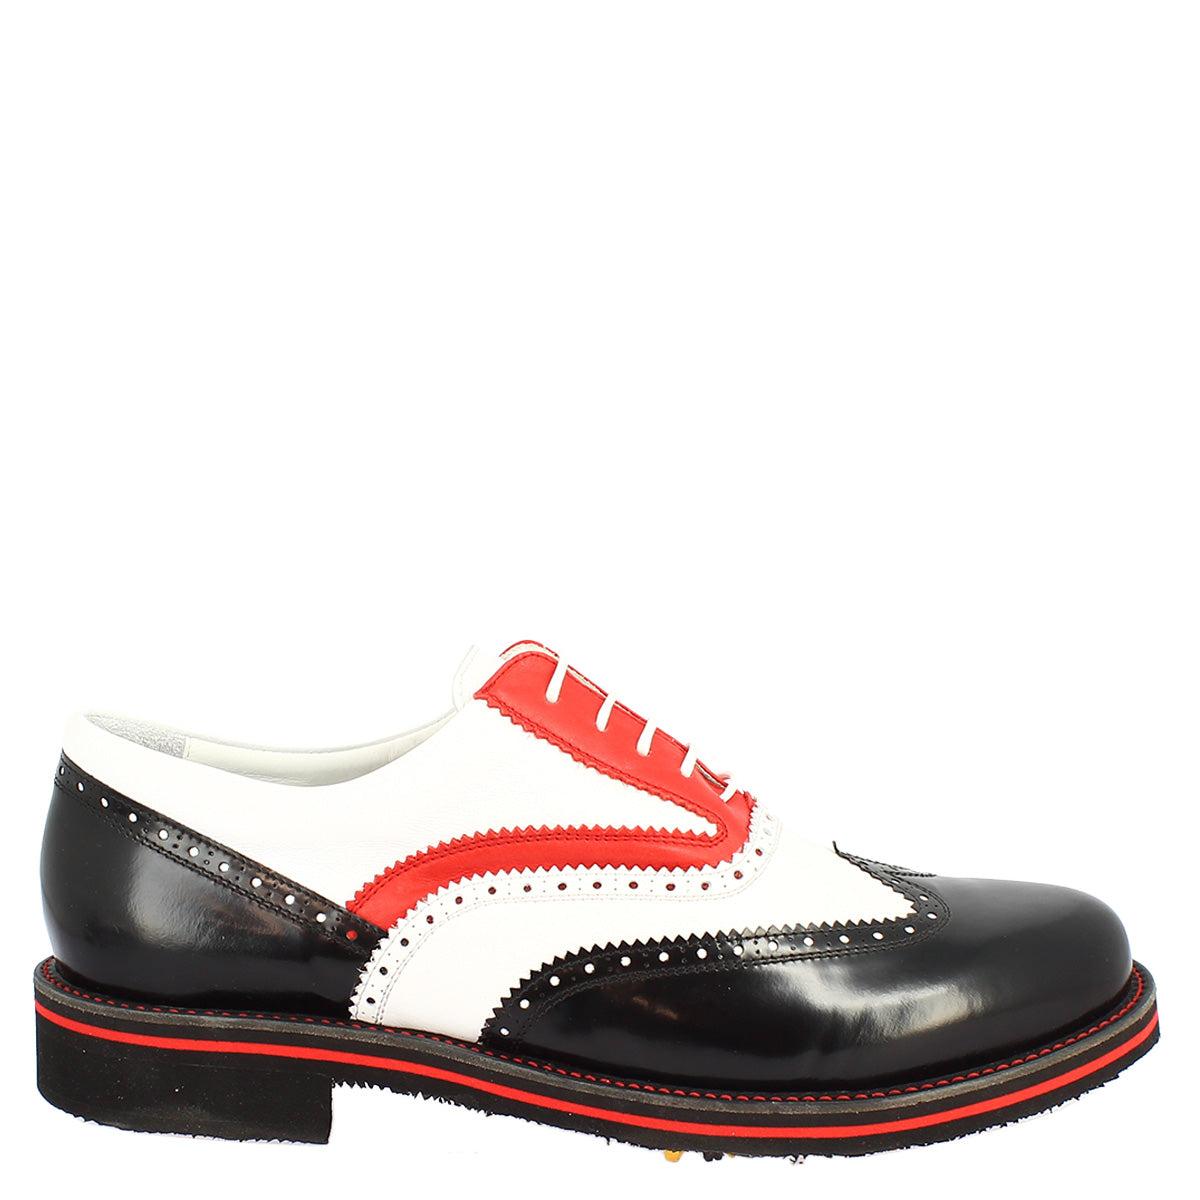 Handmade women's golf shoes in black/white/red full grain leather